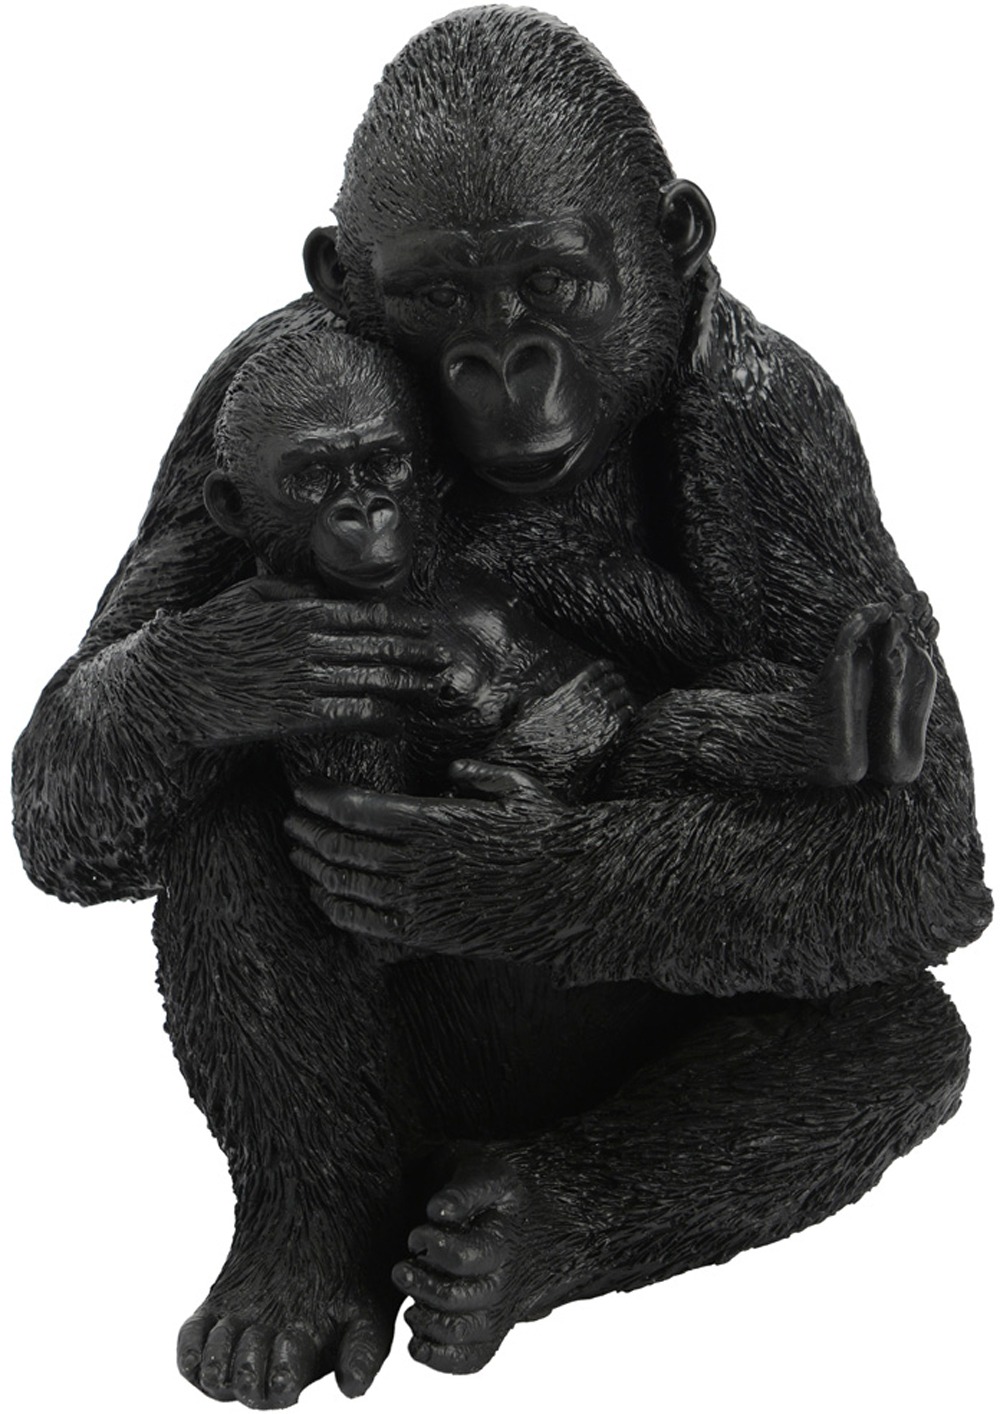 Statuette maman avec bébé gorille en résine